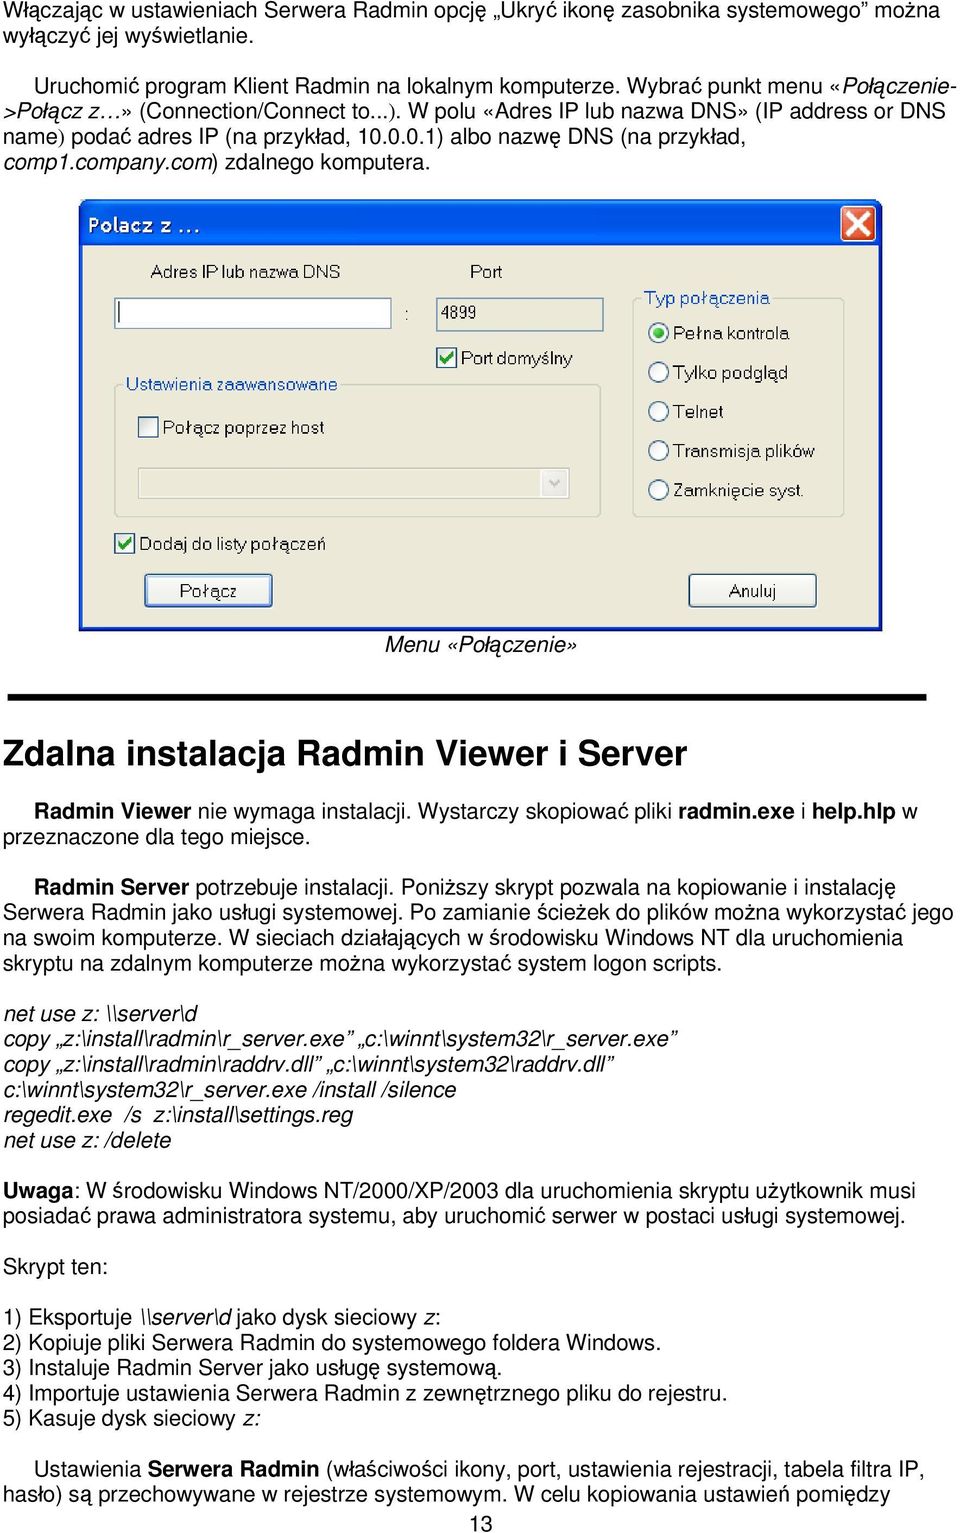 company.com) zdalnego komputera. Menu «Połączenie» Zdalna instalacja Radmin Viewer i Server Radmin Viewer nie wymaga instalacji. Wystarczy skopiować pliki radmin.exe i help.